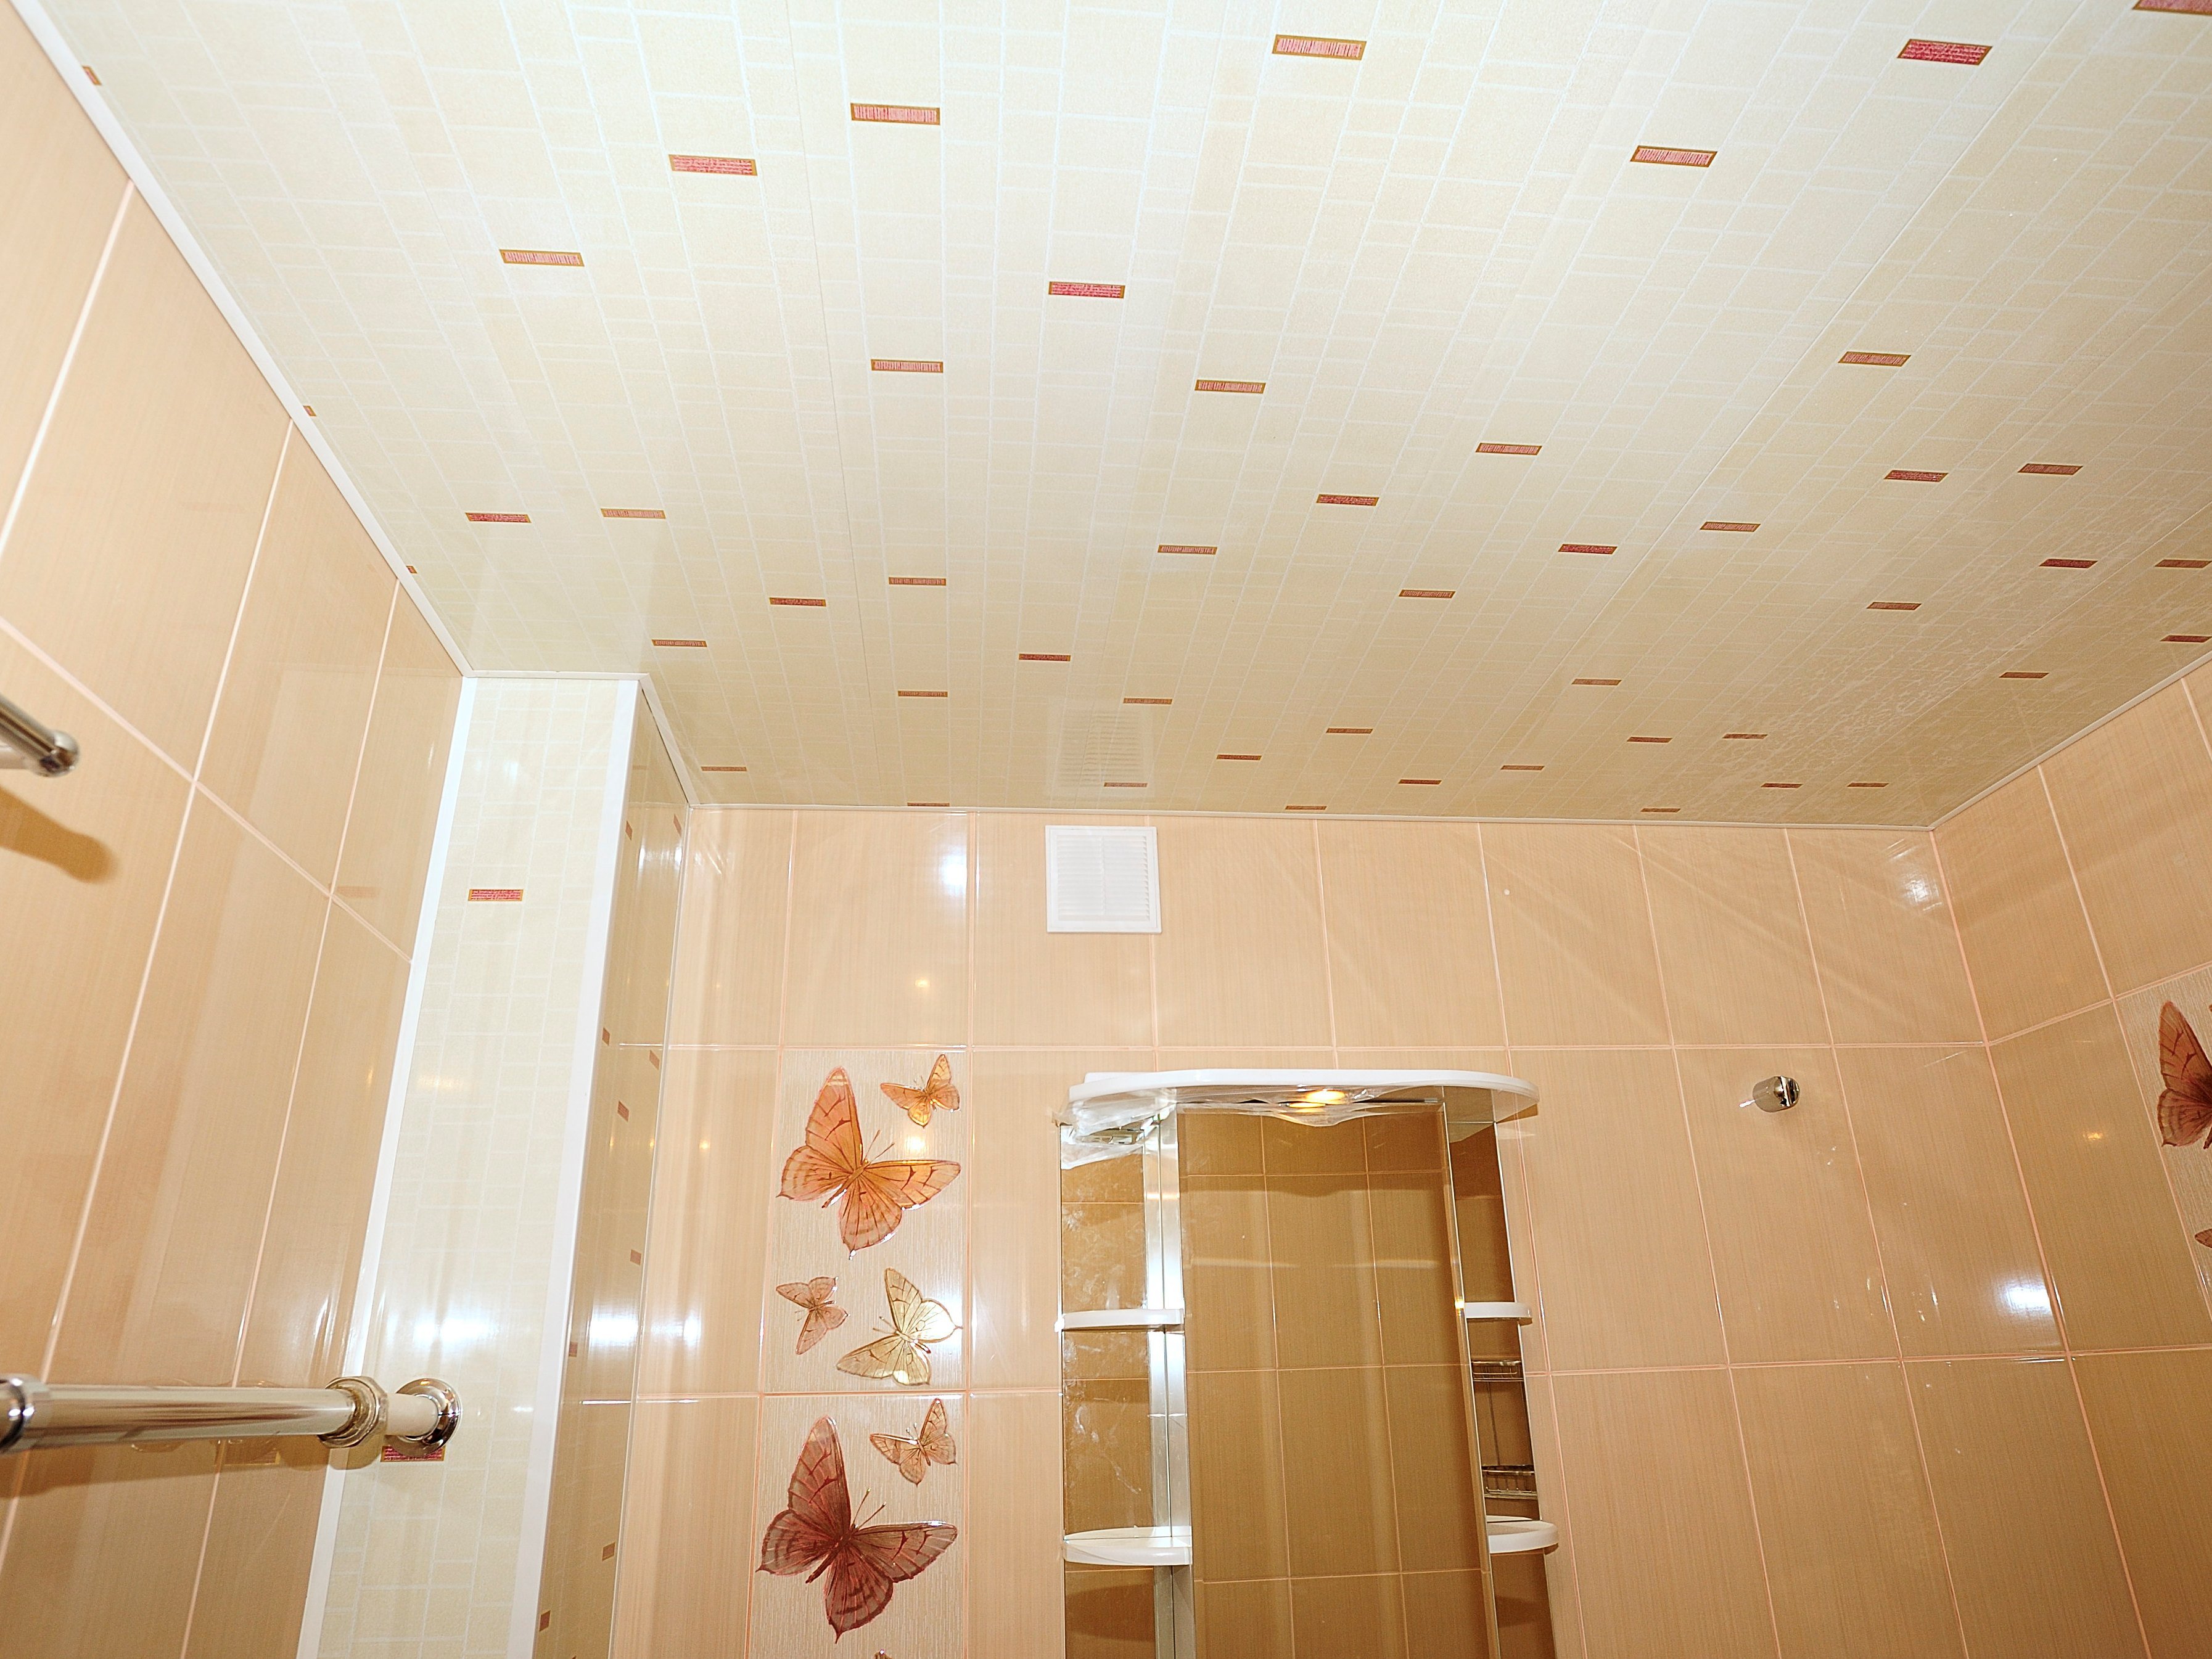 Подвесной потолок в ванную комнату